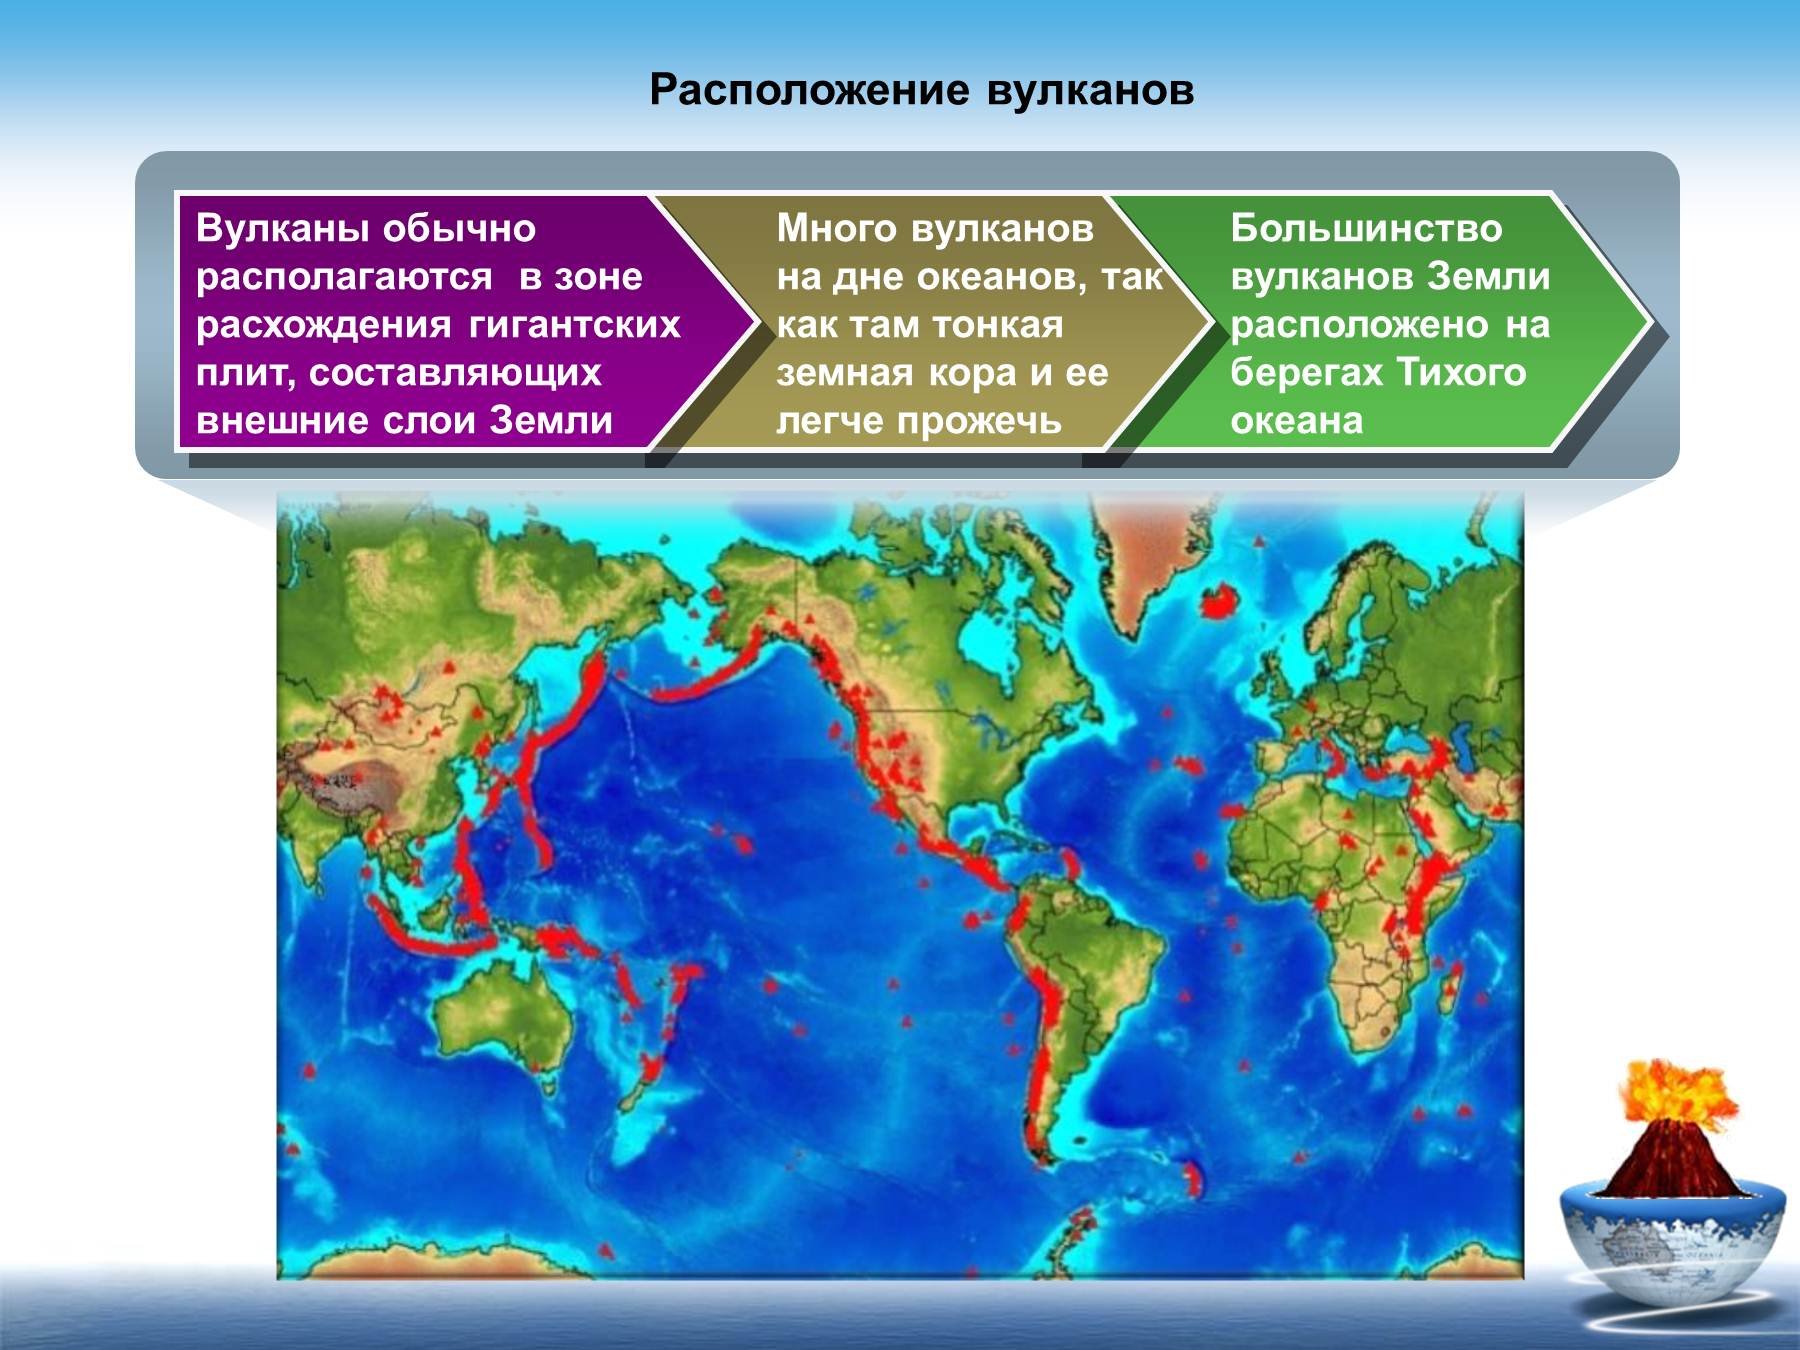 Зоны землетрясений и вулканизма в евразии. Географическое расположение вулканов. Зоны активной вулканической деятельности. Карта вулканической активности.